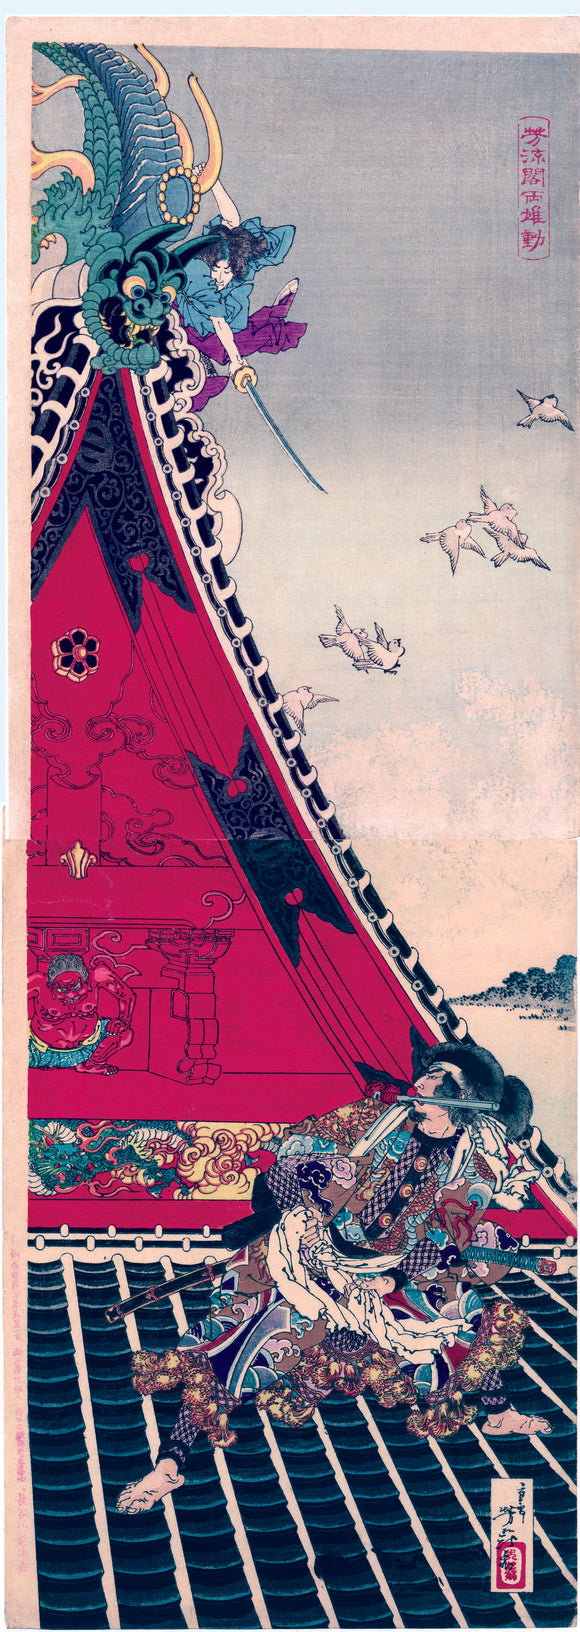 Yoshitoshi: Fight on the Roof of the Hôryûkaku